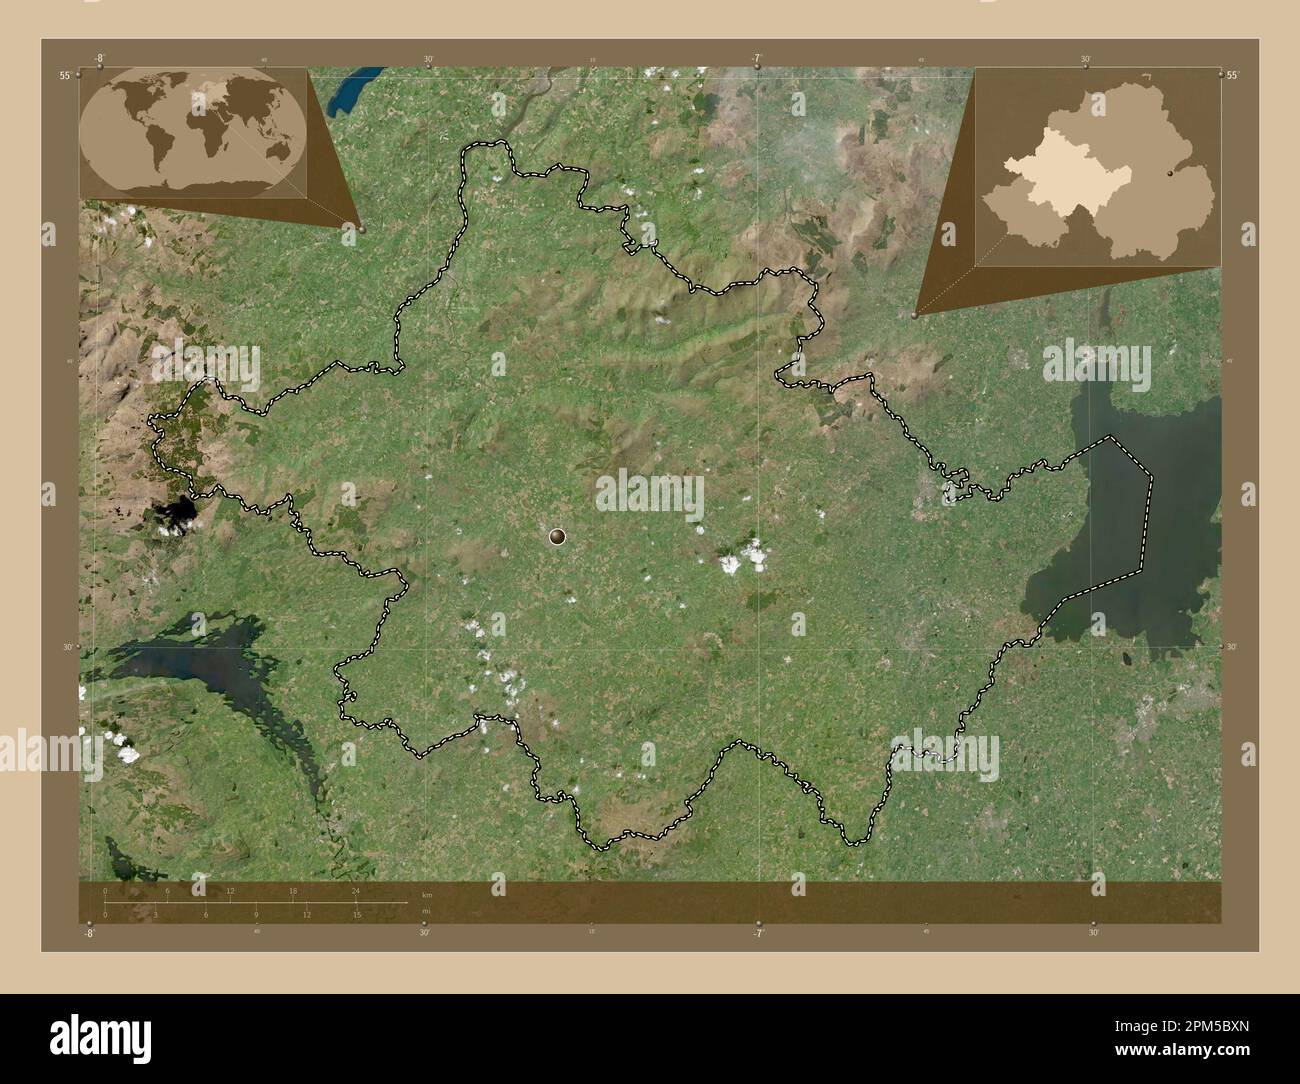 Tyrone, Region Nordirland. Satellitenkarte mit niedriger Auflösung. Eckkarten für zusätzliche Standorte Stockfoto